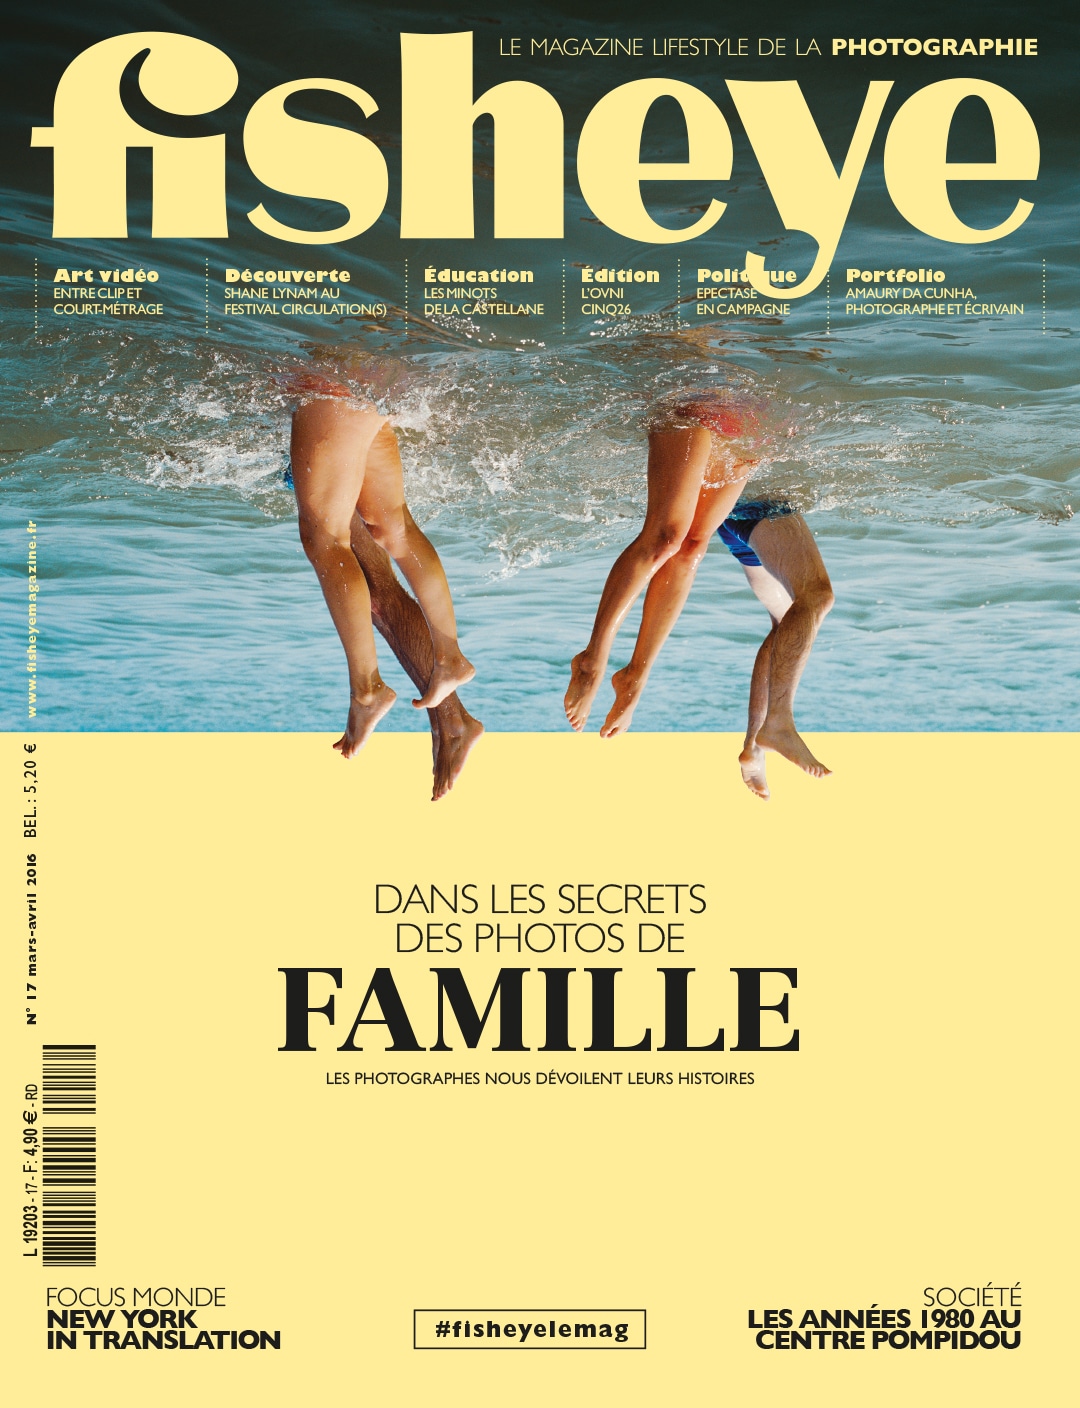 Fisheye Magazine #17 Les photos de famille nous racontent des histoires